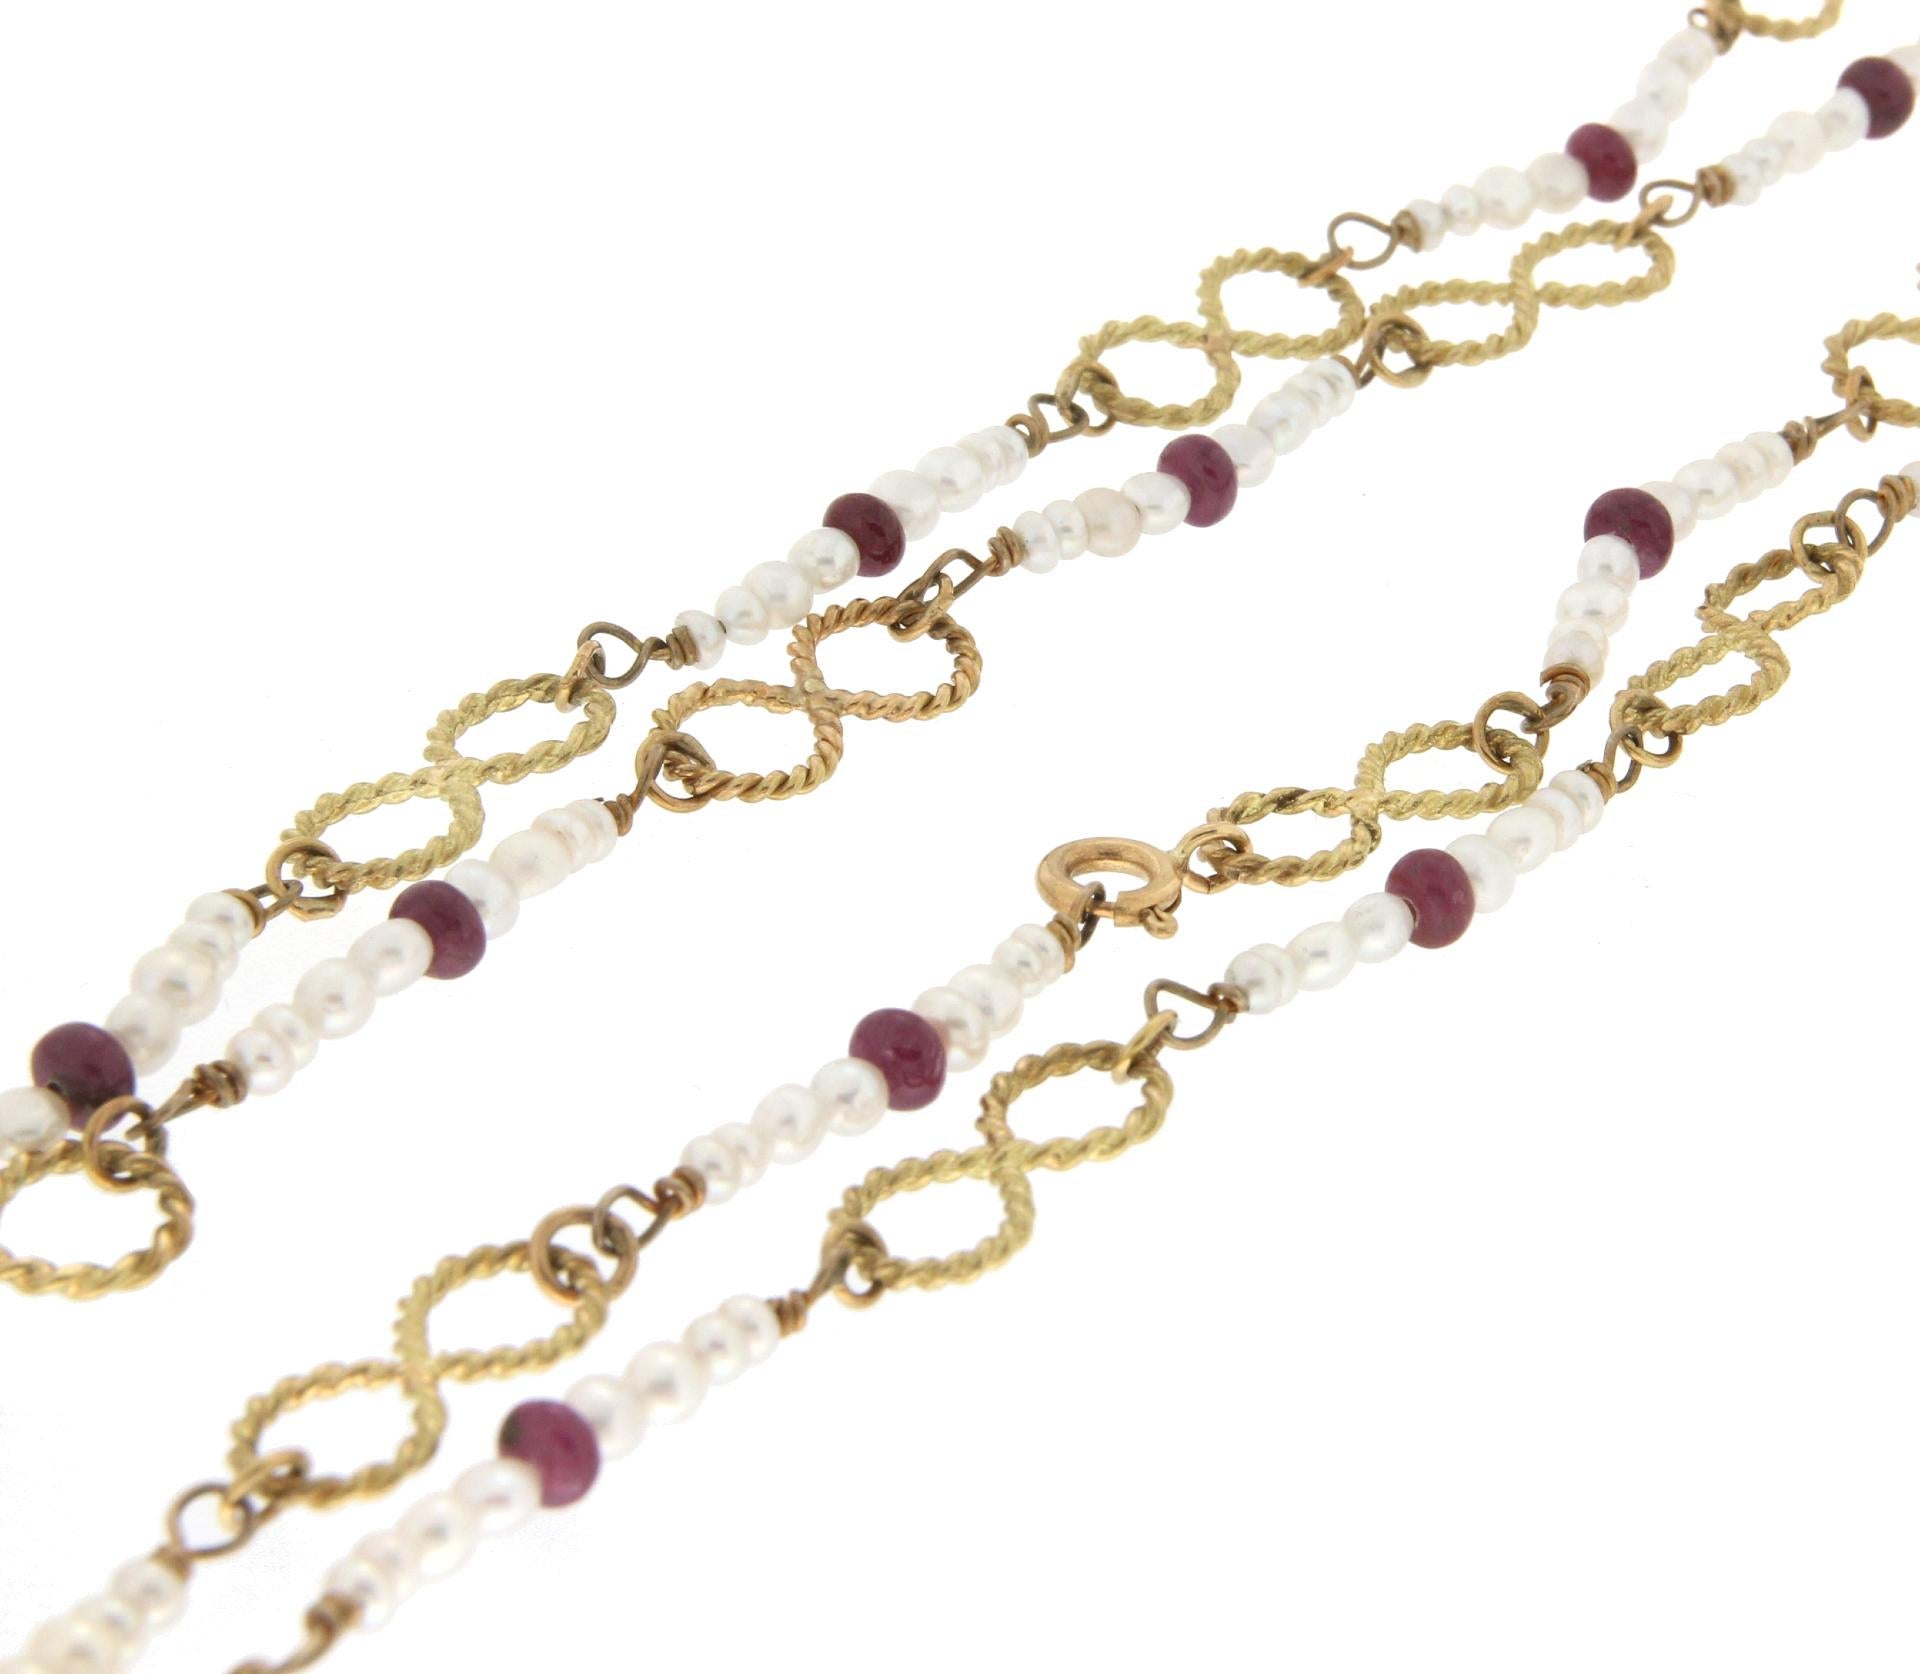 Taille mixte Chaîne collier en or jaune 18 carats avec perles et rubis, fabrication artisanale en vente